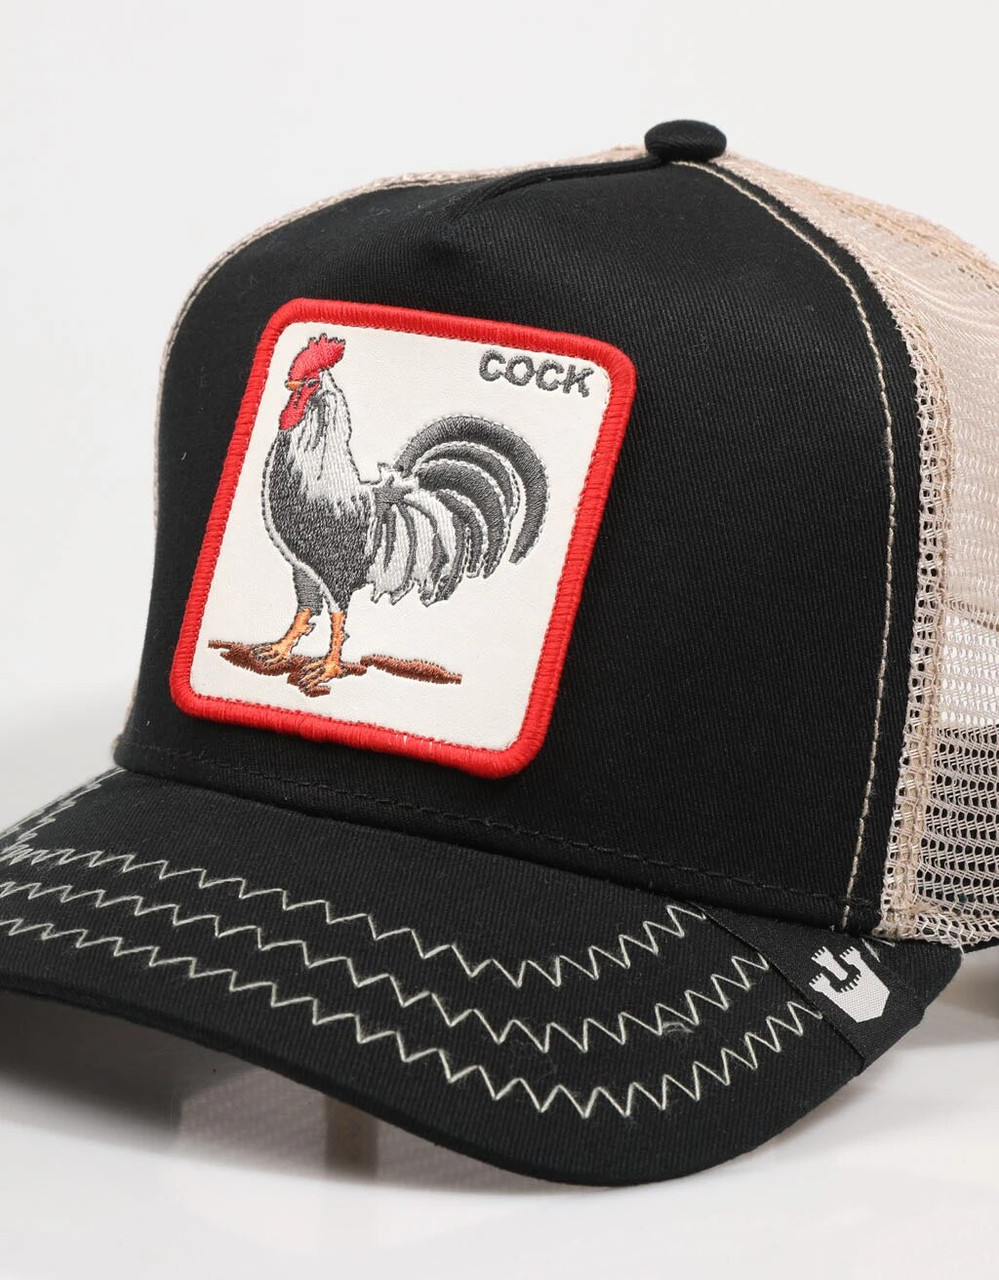 The Cock – Goorin Bros.